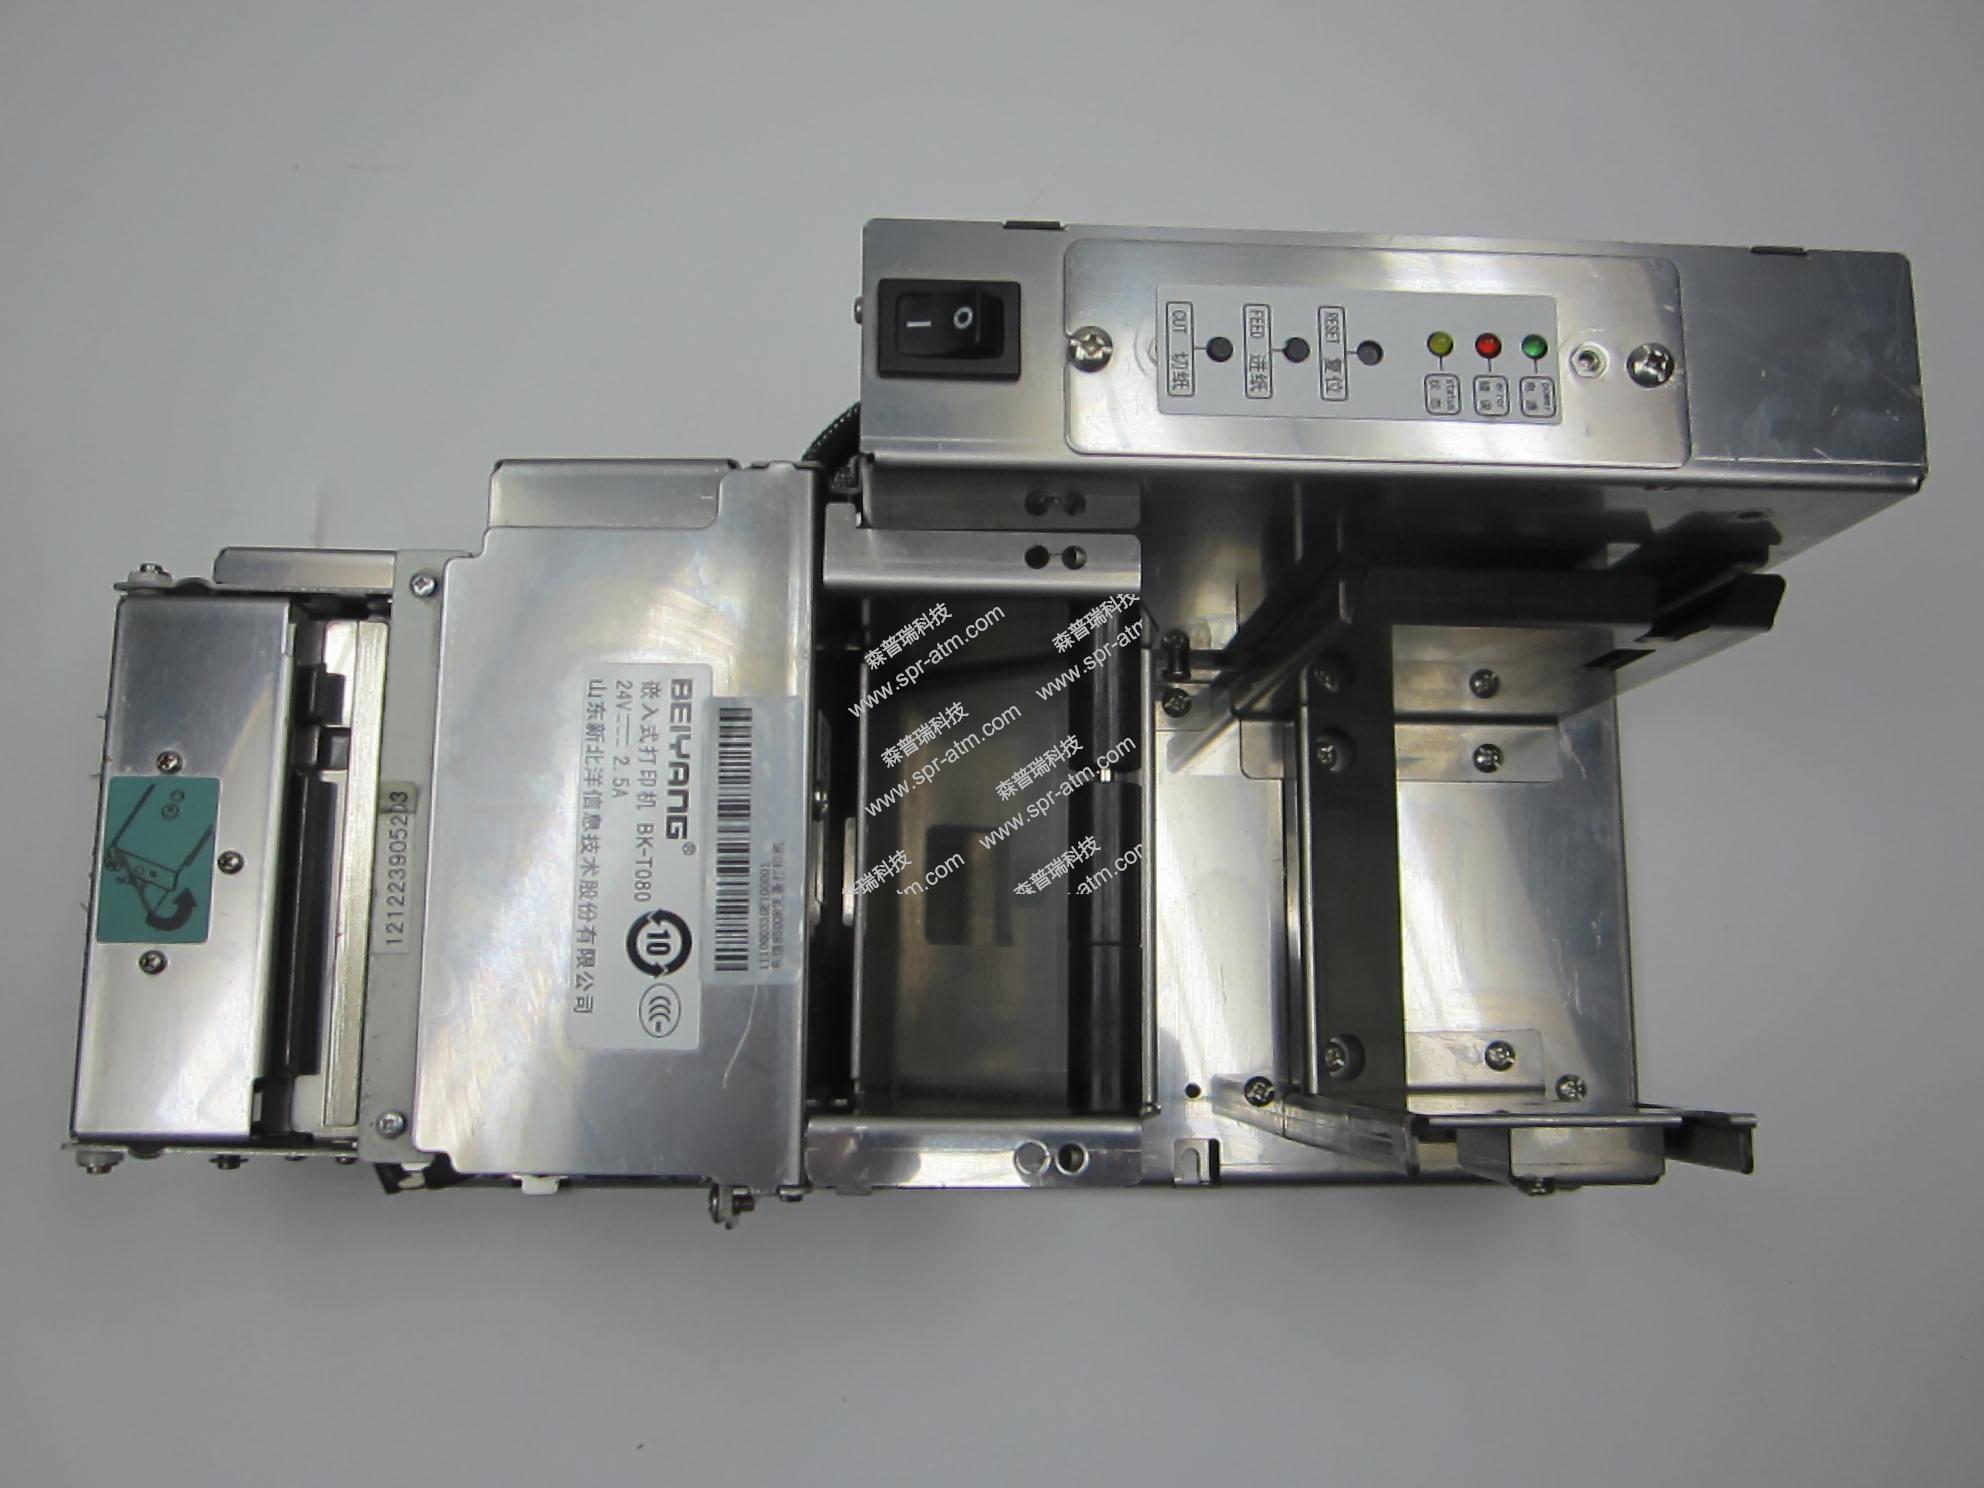 东信8500R凭条打印机(嵌入式打印机 BK-T080)-ATM配件